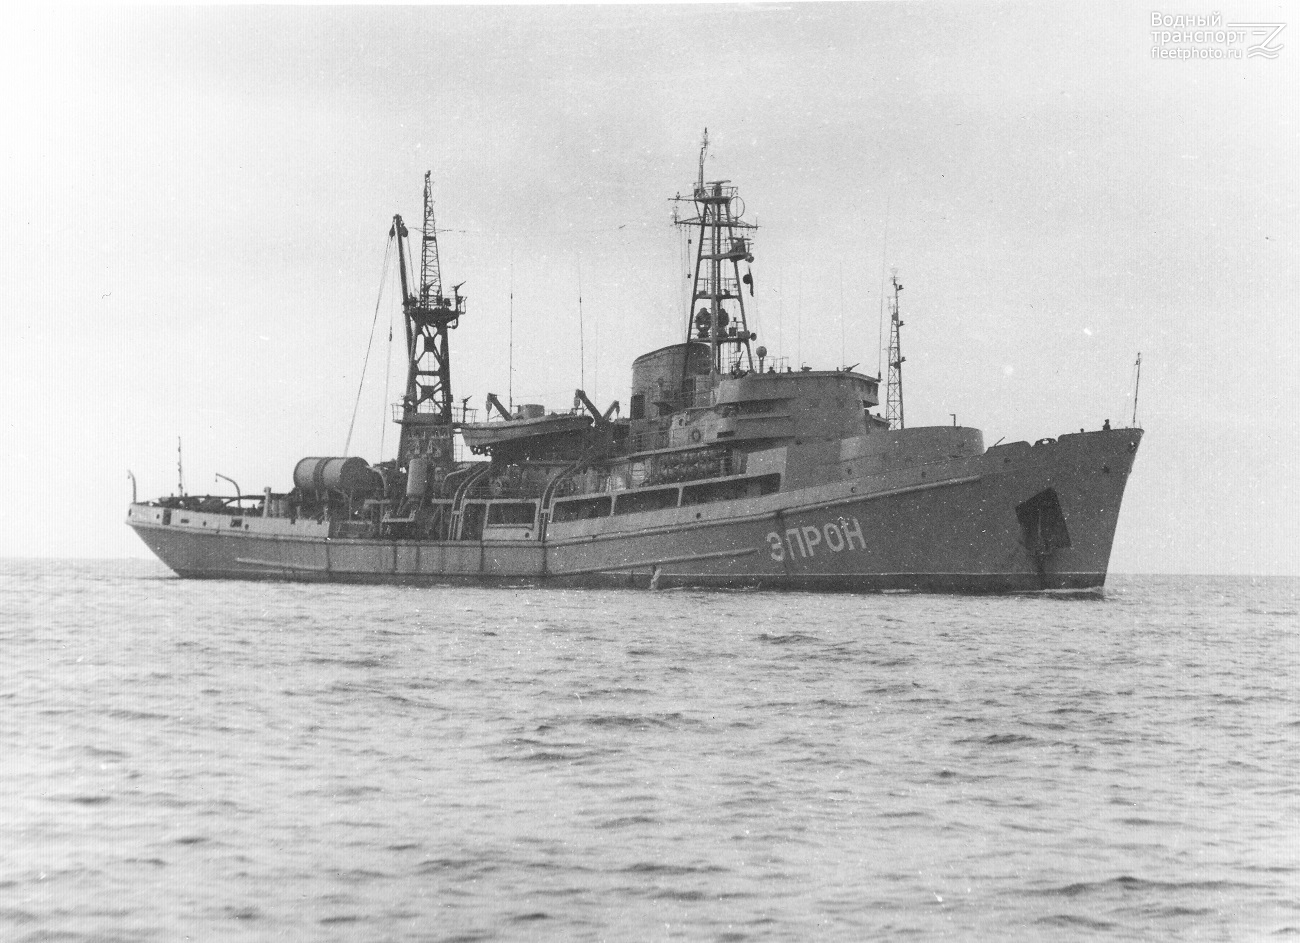 Сс 26. СС-26 Эпрон. Судно Эпрон Черноморского флота. Эпрон корабль Севастополь. Эпрон 1941.